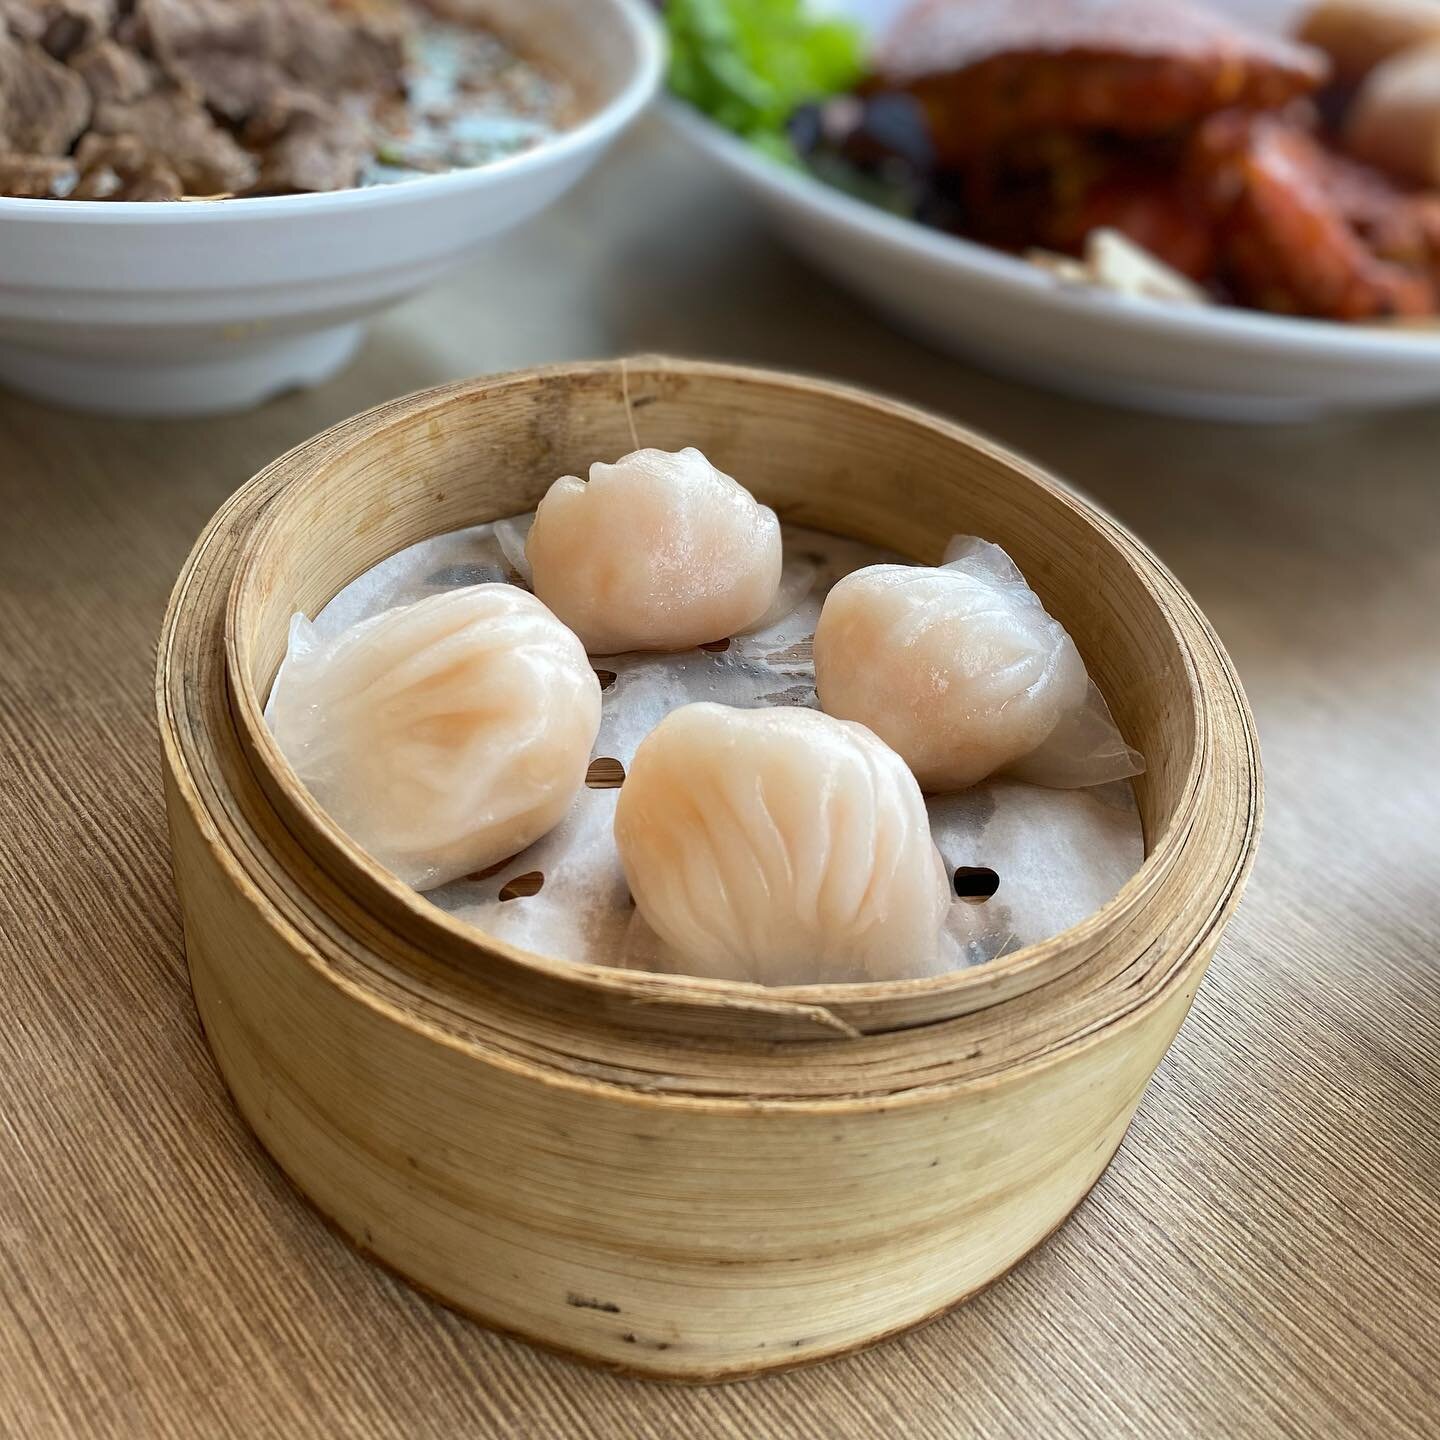 Prawn Har Gao &amp; Xiaolong Bao 😍

Classic Dim Sum dishes that you MUST order for your meal!!

#dimsum #xiaolongbao #shanghaidumplings #prawndumplings  #hargao  #royalchina #colindale